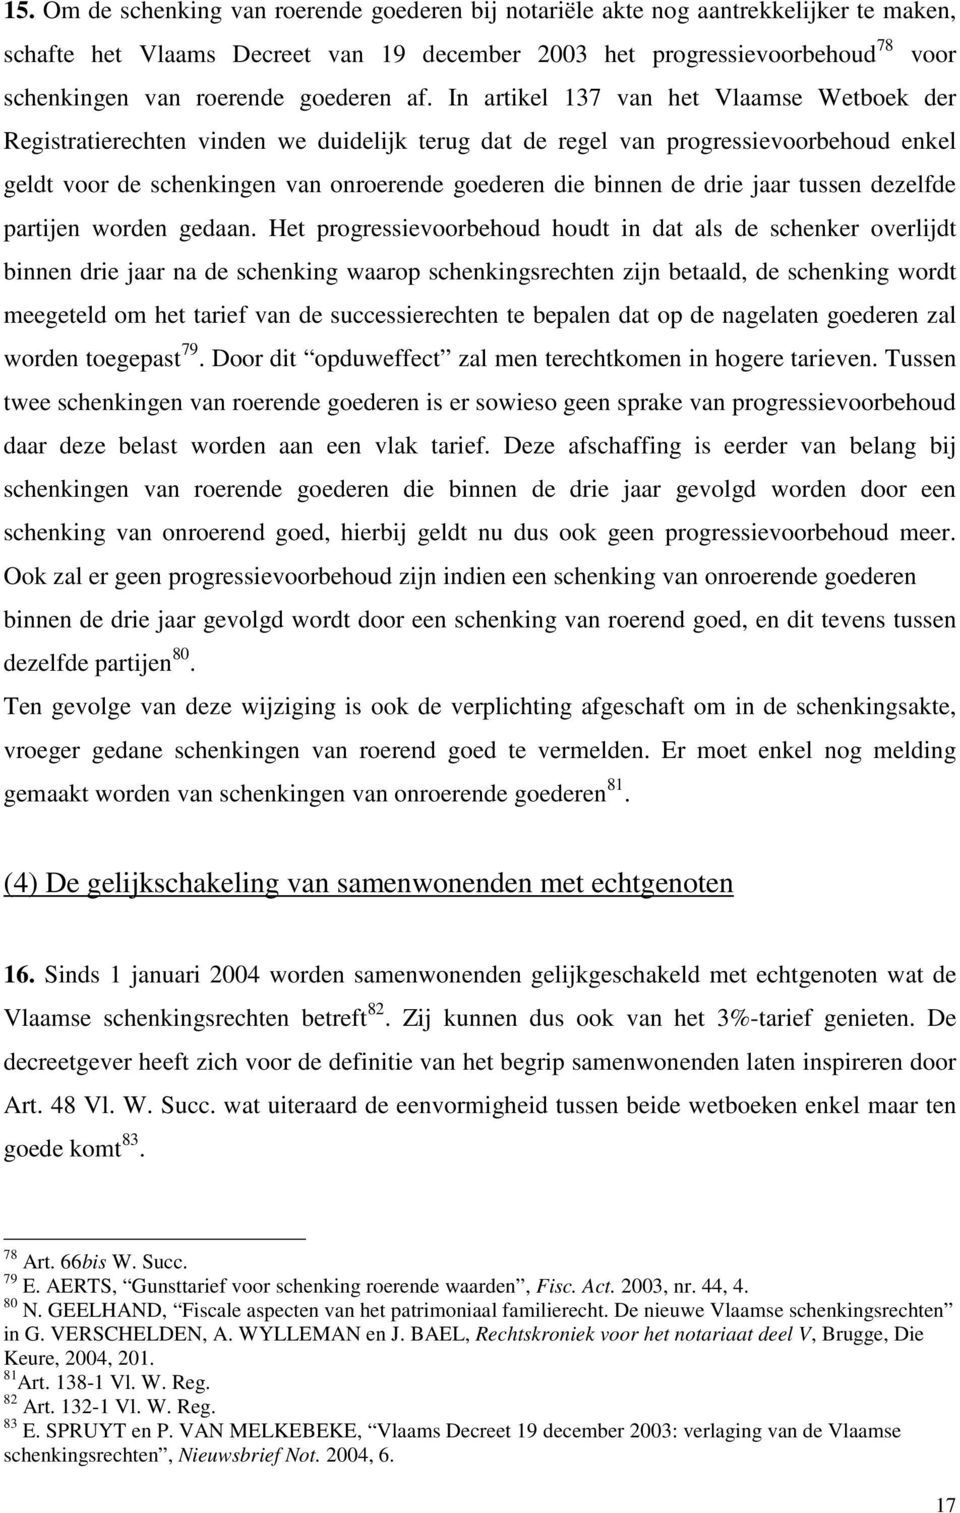 In artikel 137 van het Vlaamse Wetboek der Registratierechten vinden we duidelijk terug dat de regel van progressievoorbehoud enkel geldt voor de schenkingen van onroerende goederen die binnen de